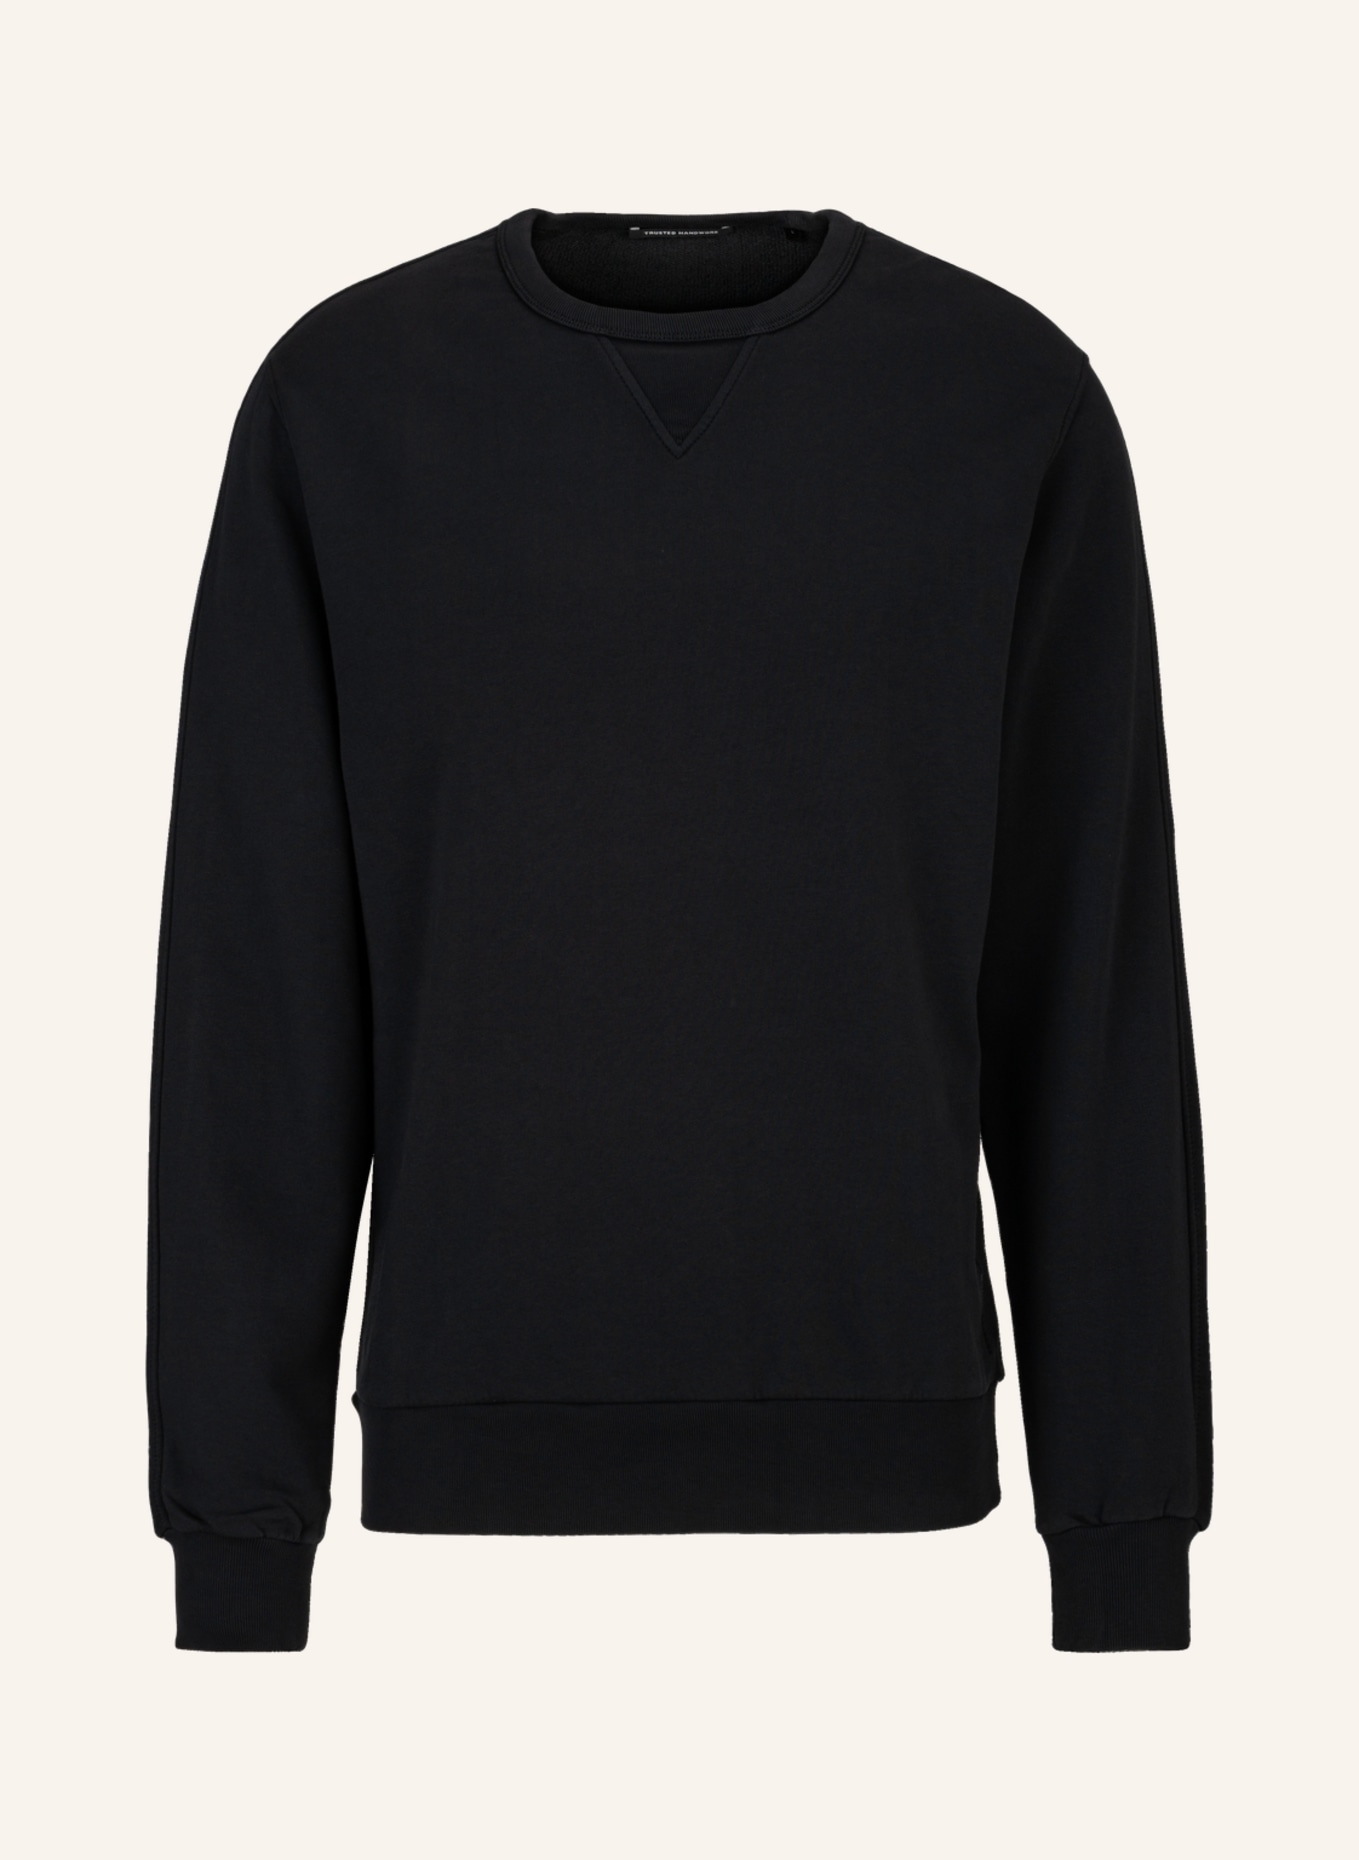 TRUSTED HANDWORK Sweatshirt Regular Fit, Farbe: SCHWARZ (Bild 1)